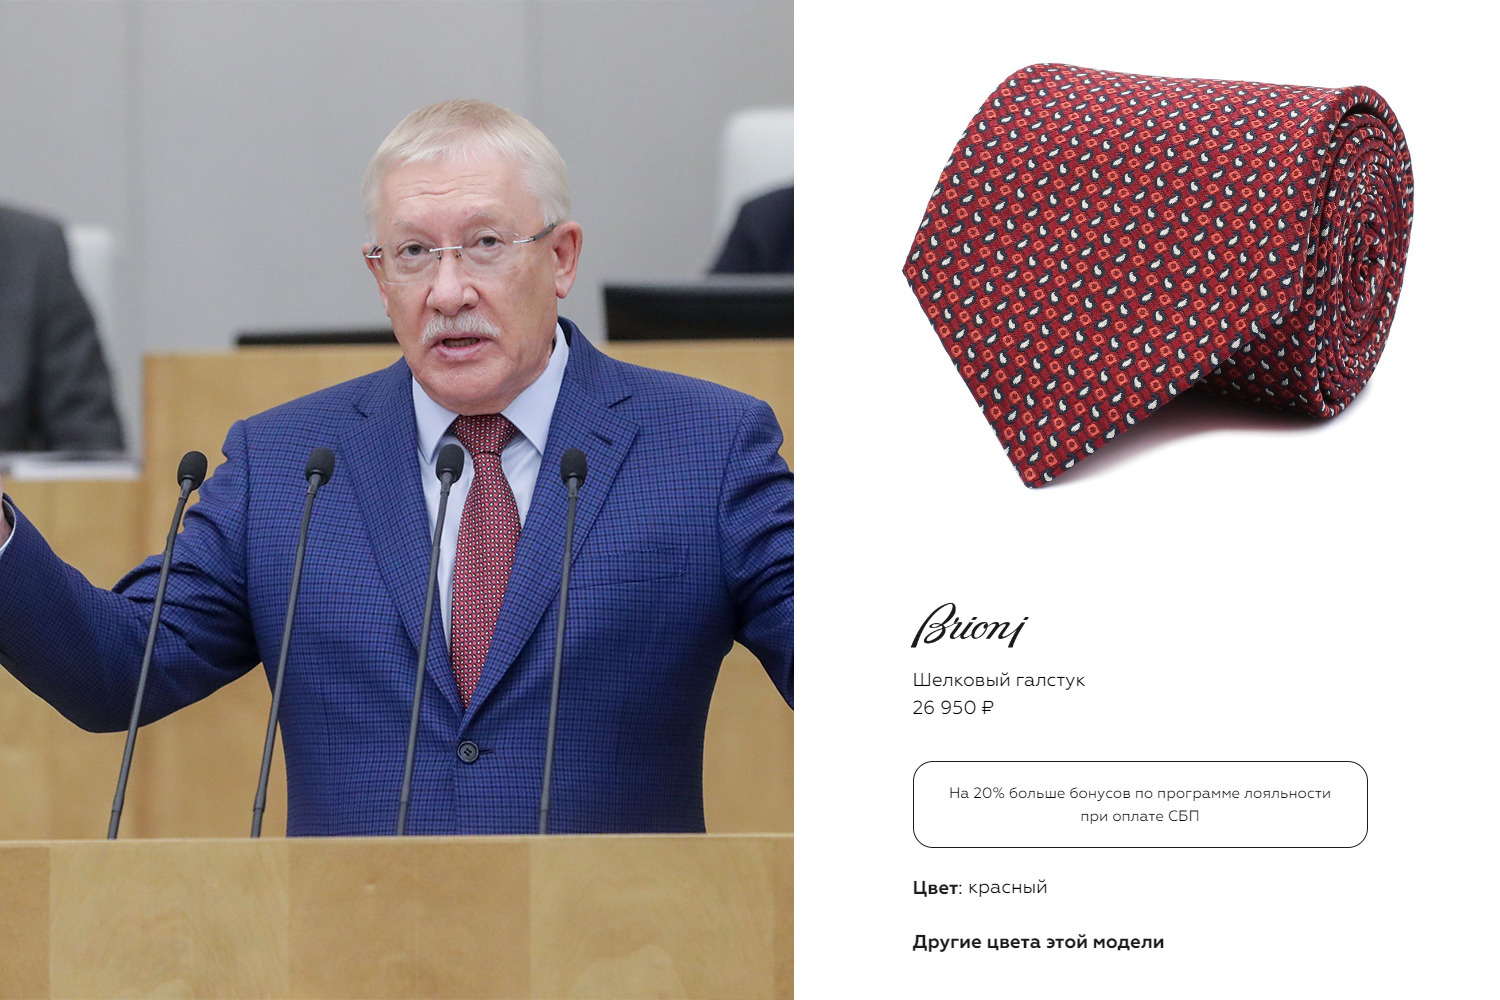 Председатель комитета по контролю Олег Морозов и его шелковый галстук от Brioni